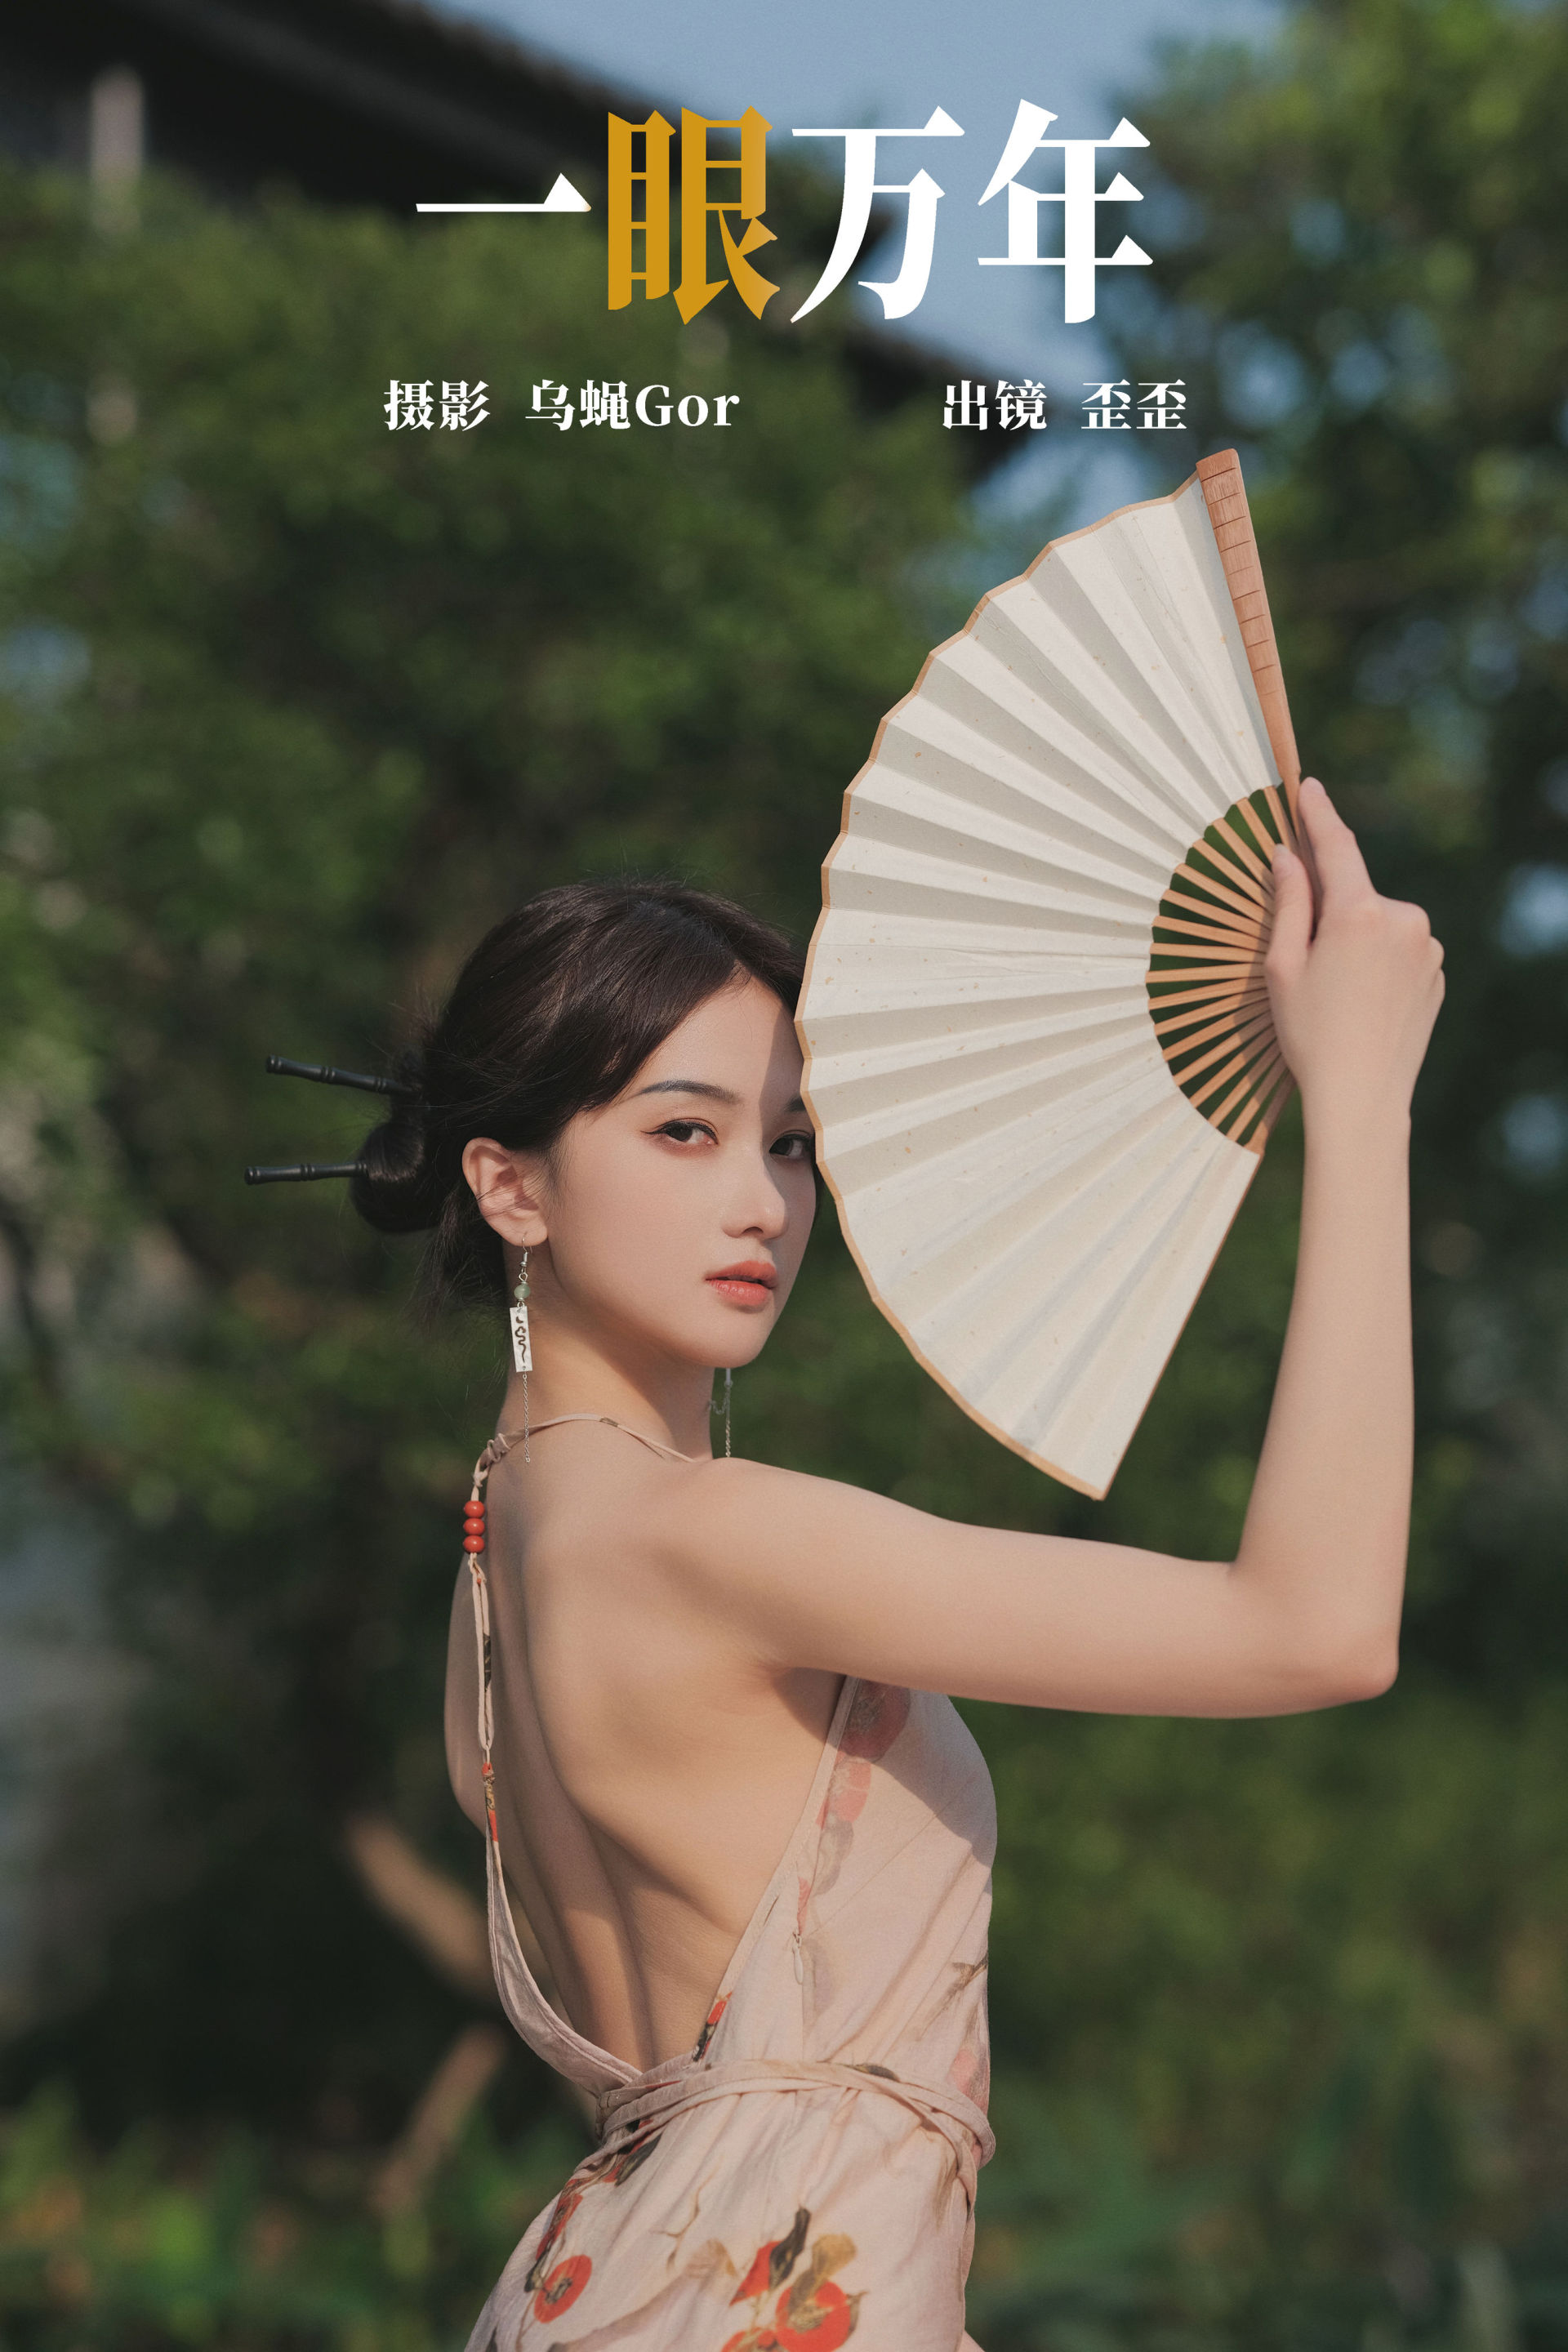 一眼万年 中国风 摄影 人像 美女 模特 古典 性感